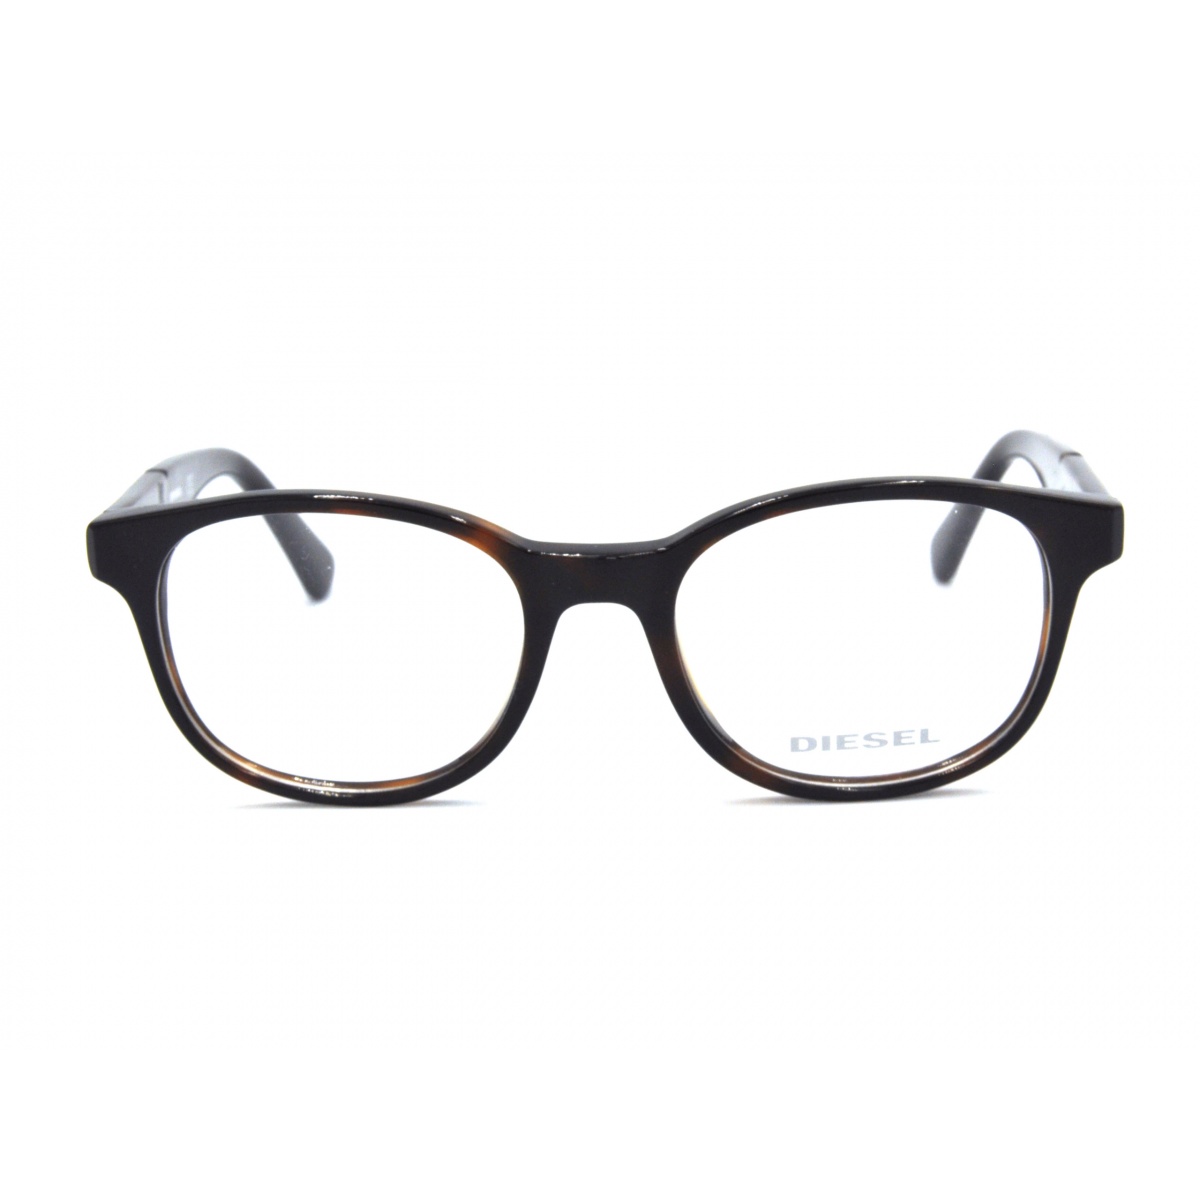 Γυαλιά οράσεως DIESEL DL5243 052 46-17-130 Πειραιάς